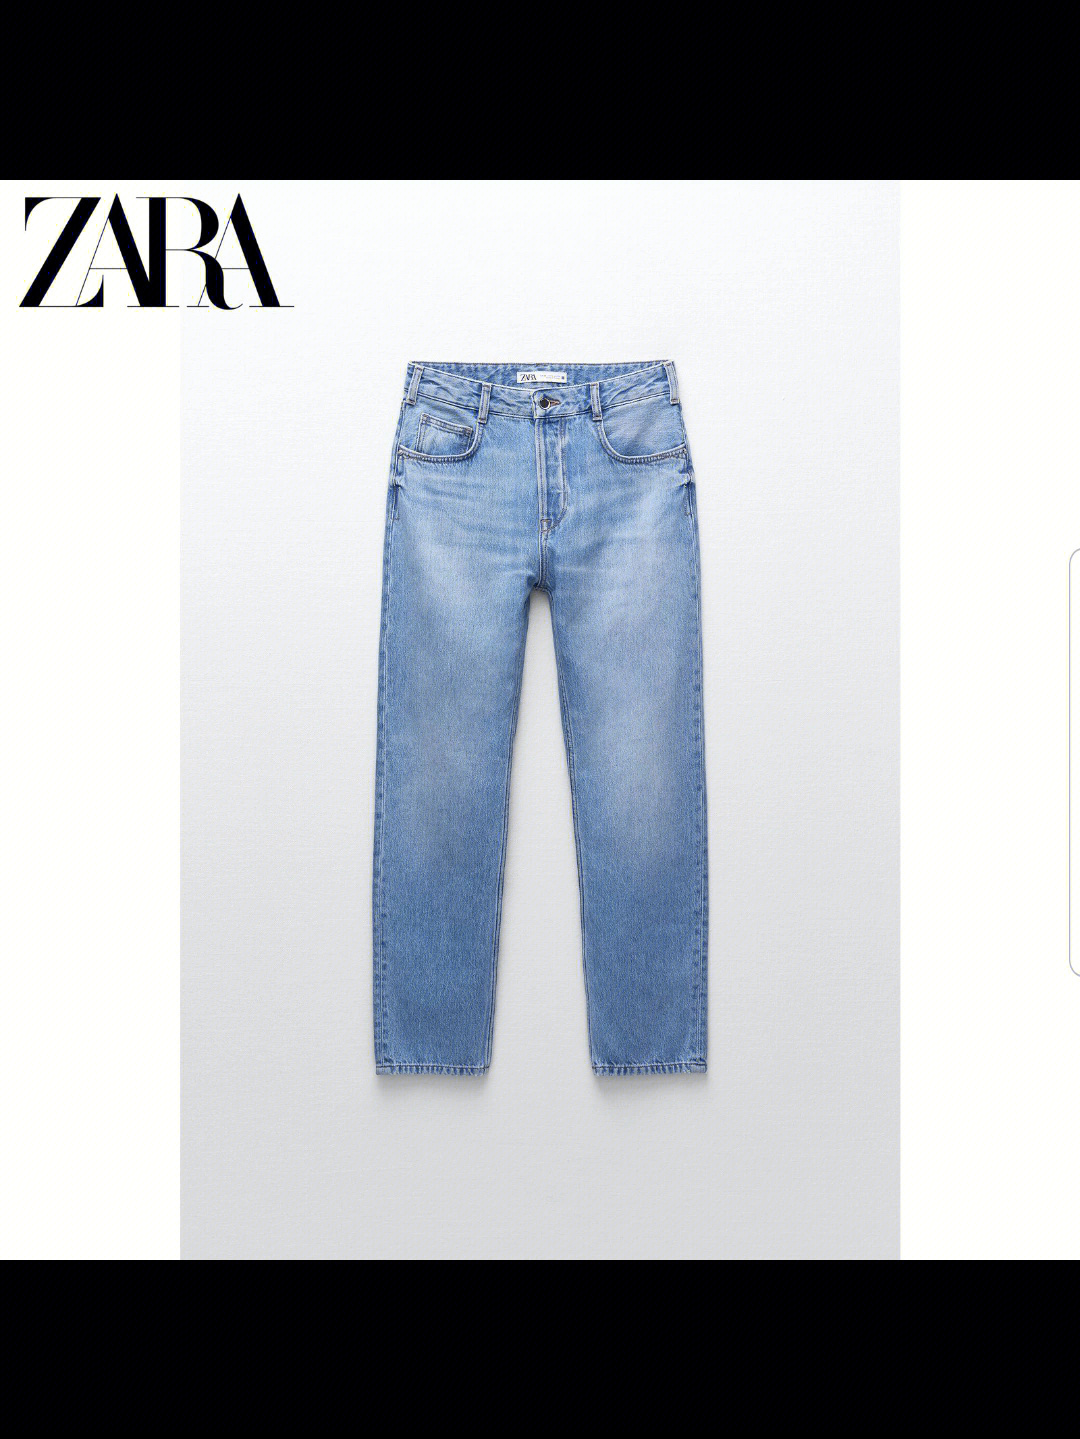 zara裤子尺码表图片